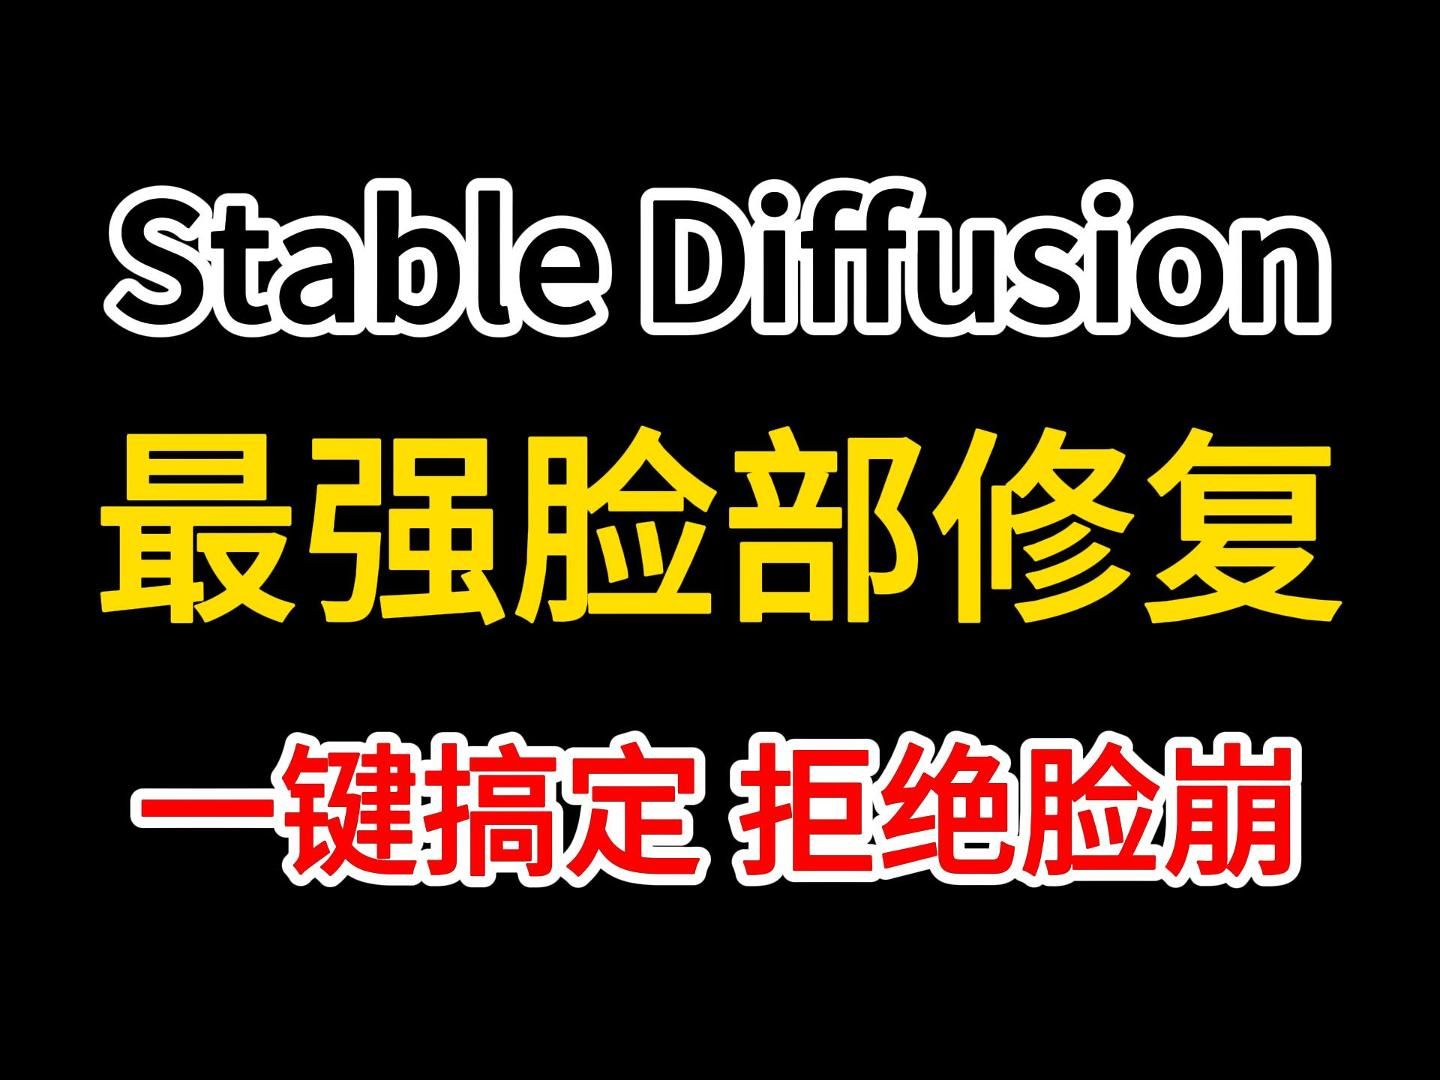 【Stable Diffusion】最强SD崩脸修复神器ADetailer（附插件）面部细节，表情管理，小白也能轻松完美掌控！从此再小的图片也永别告别崩脸！